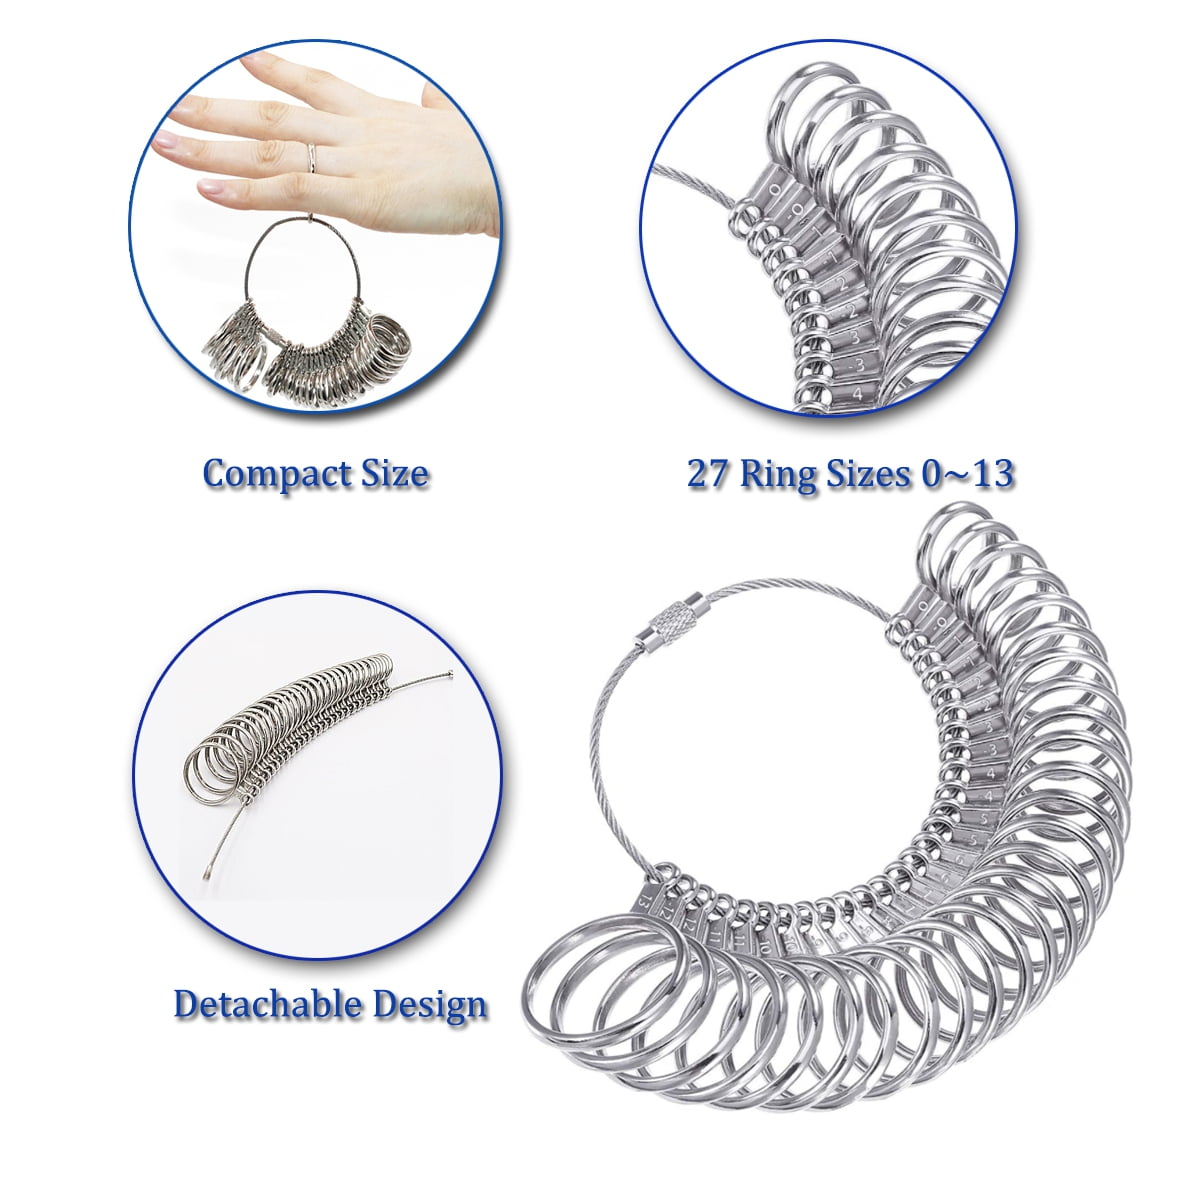 Meowoo Ring Sizer Measuring Tool Aluminum Ring Mandrel and Finger Gauges (Metal Ring Sizer Tool Set)